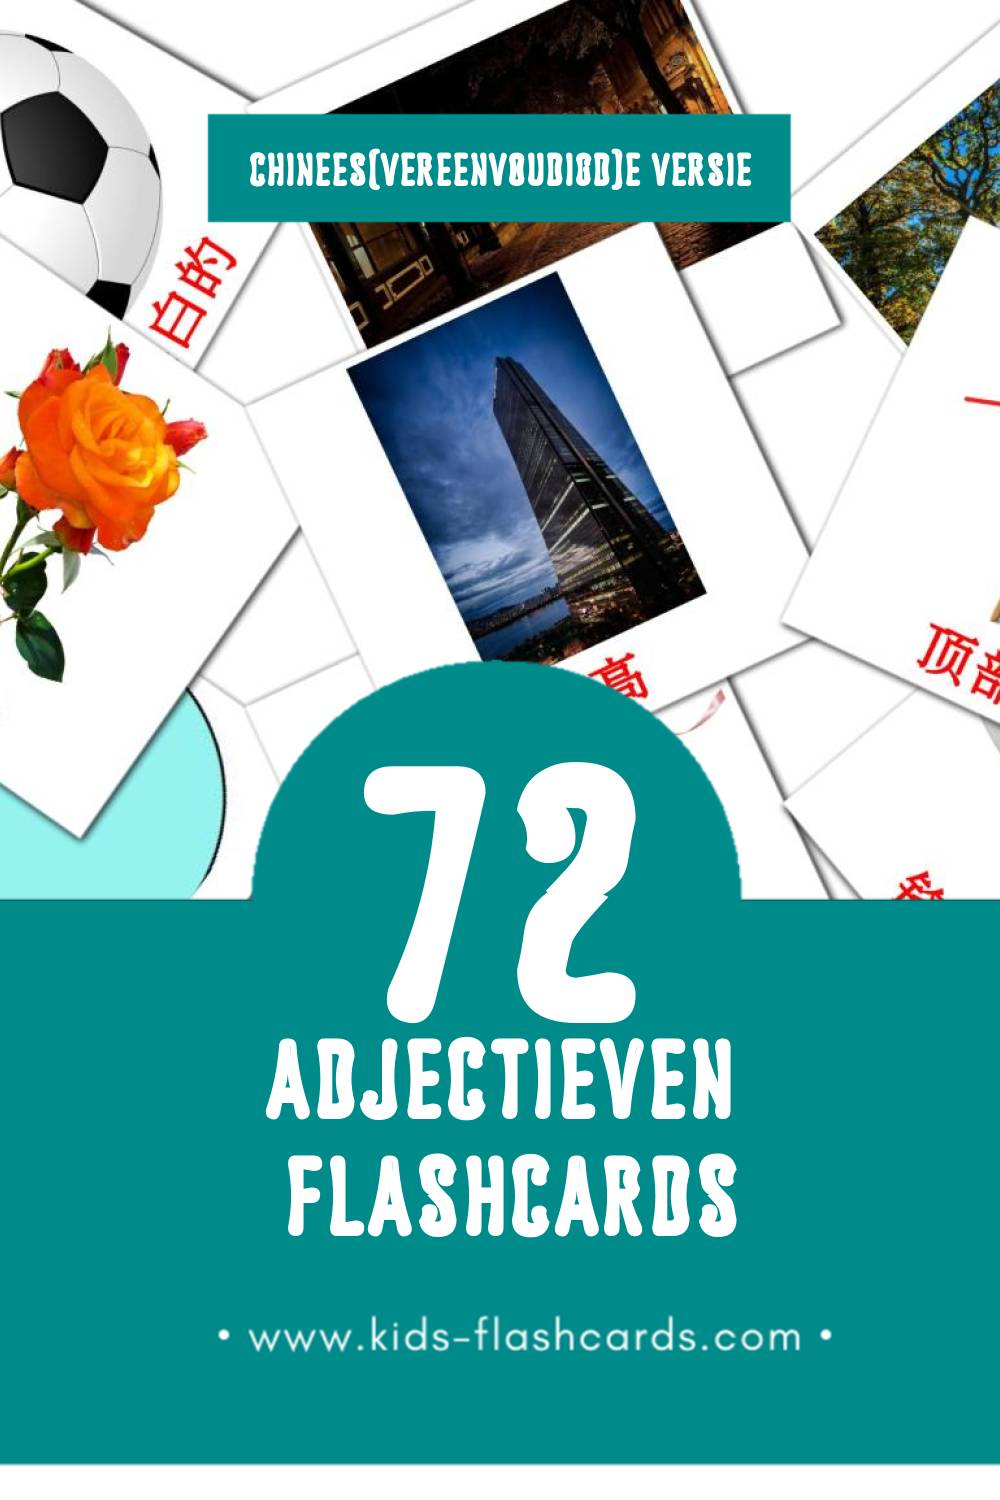 Visuele 形容词 Flashcards voor Kleuters (72 kaarten in het Chinees(vereenvoudigd))